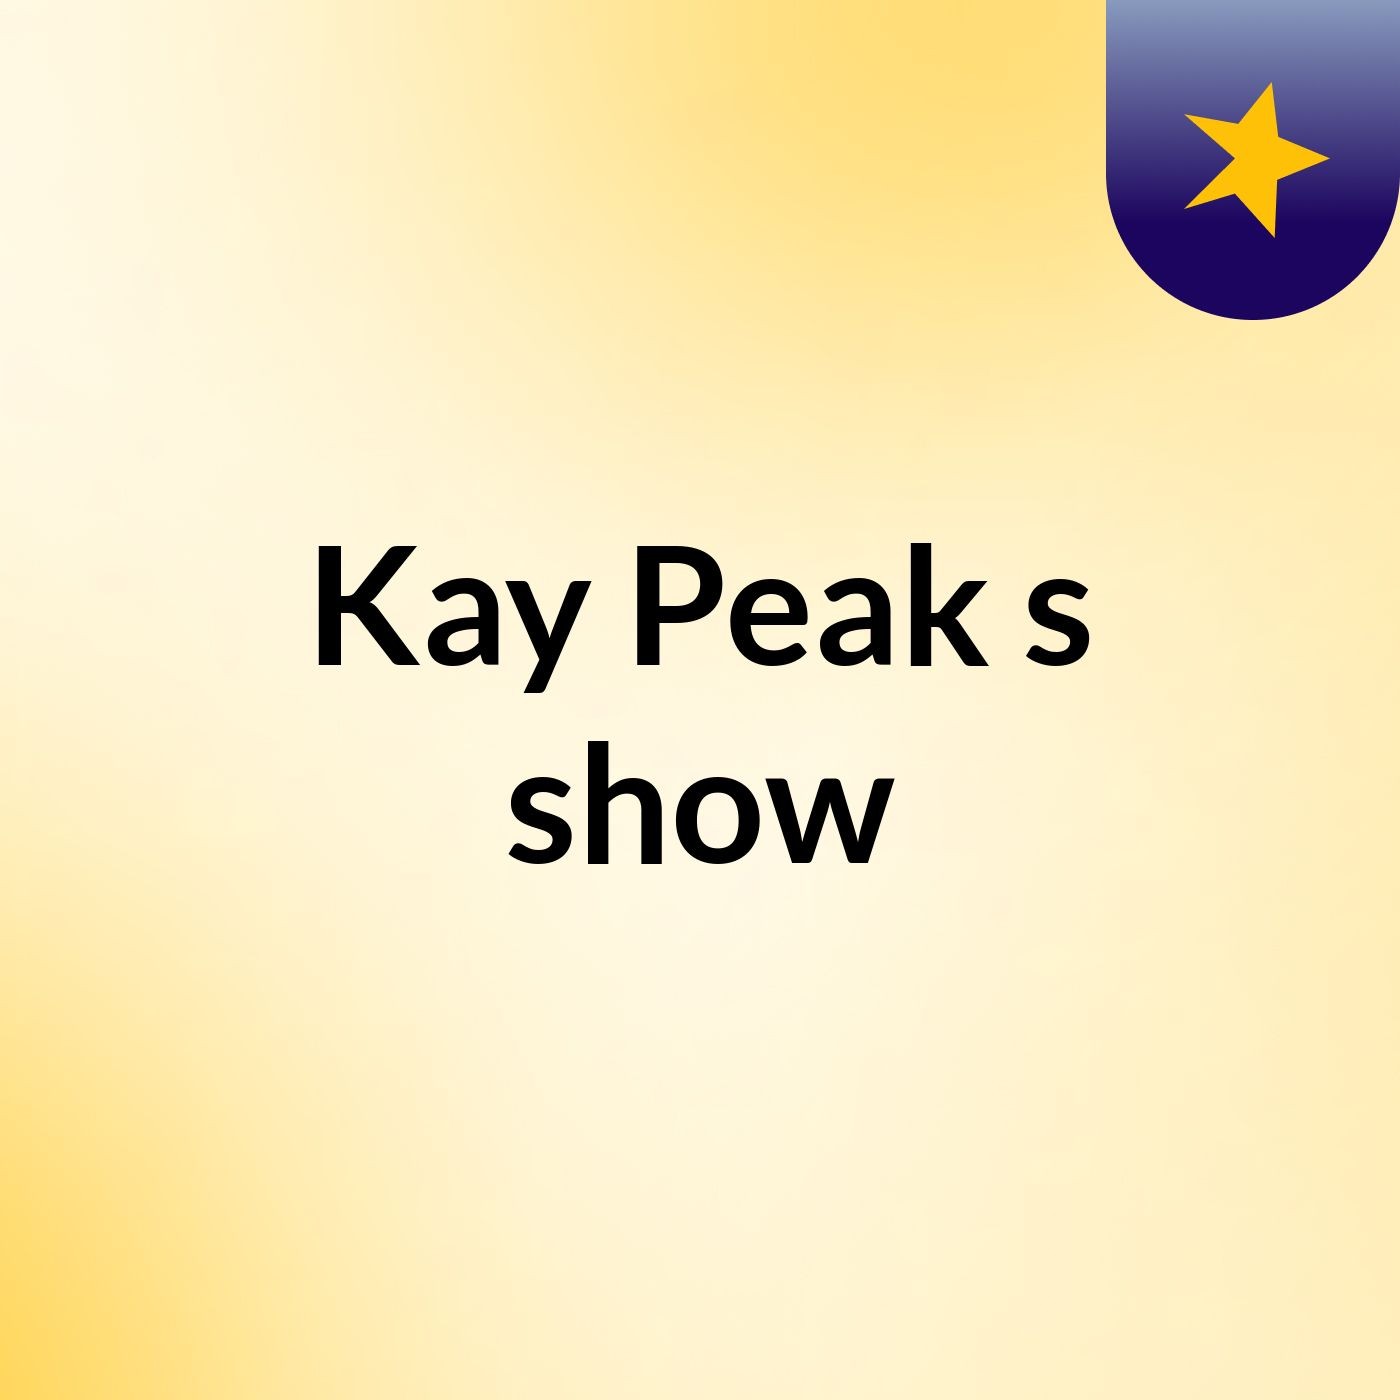 Kay Peak's show